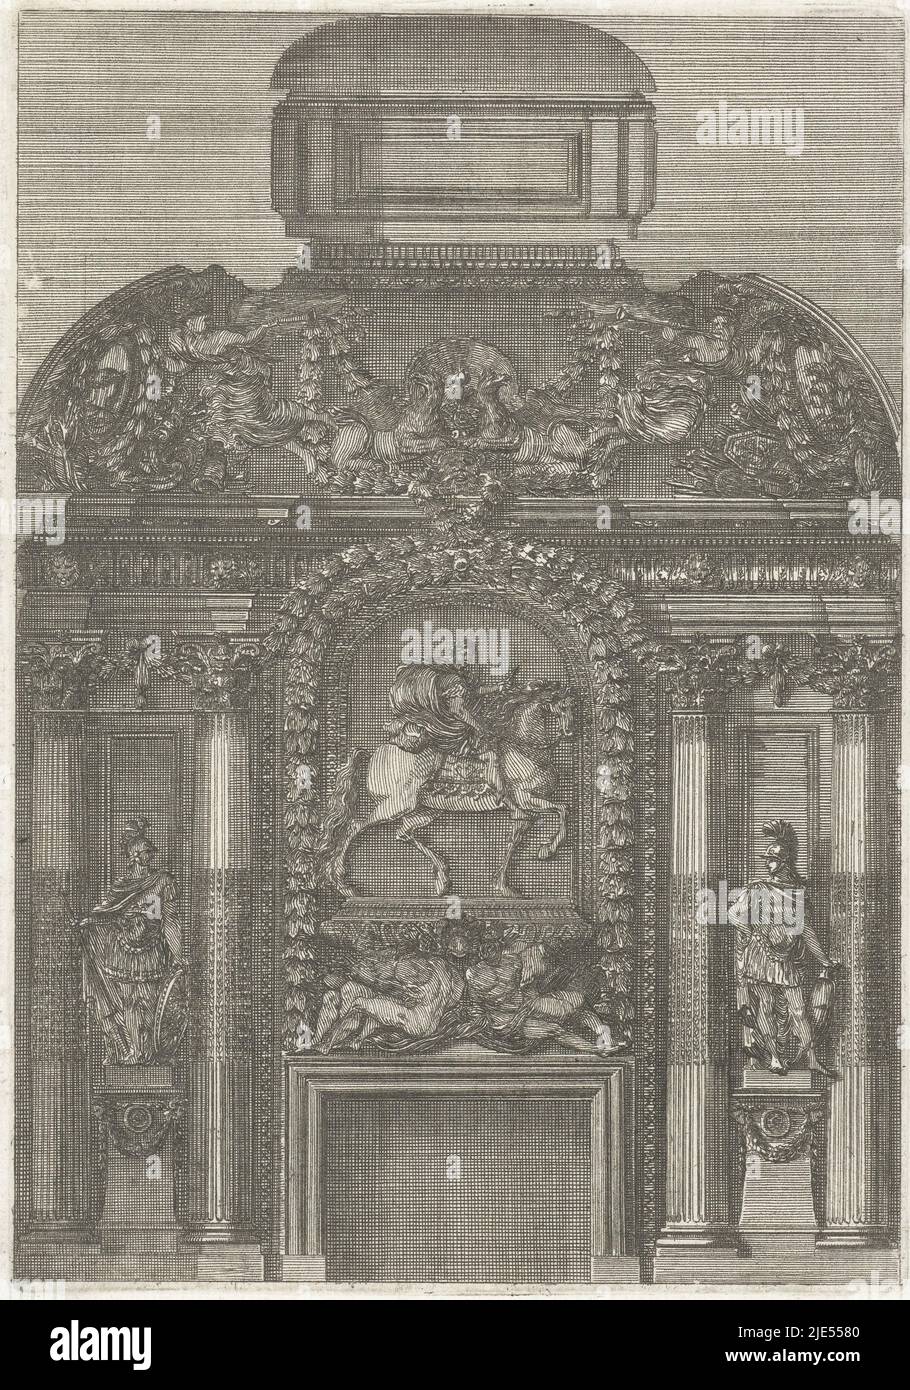 Au centre, un cavalier est représenté au-dessus de deux esclaves reliés, en retrait colonnes corinthiennes avec la statue d'un général romain entre les deux. A partir d'une série de 12 feuilles, Chimney atrium (titre de la série), imprimerie: Jean Lepautre, Jean Lepautre, éditeur: Jean Leblond (I), imprimerie: France, (éventuellement), France, (éventuellement), Editeur: Paris, c. 1651, papier, gravure, h 193 mm × l 135 mm Banque D'Images